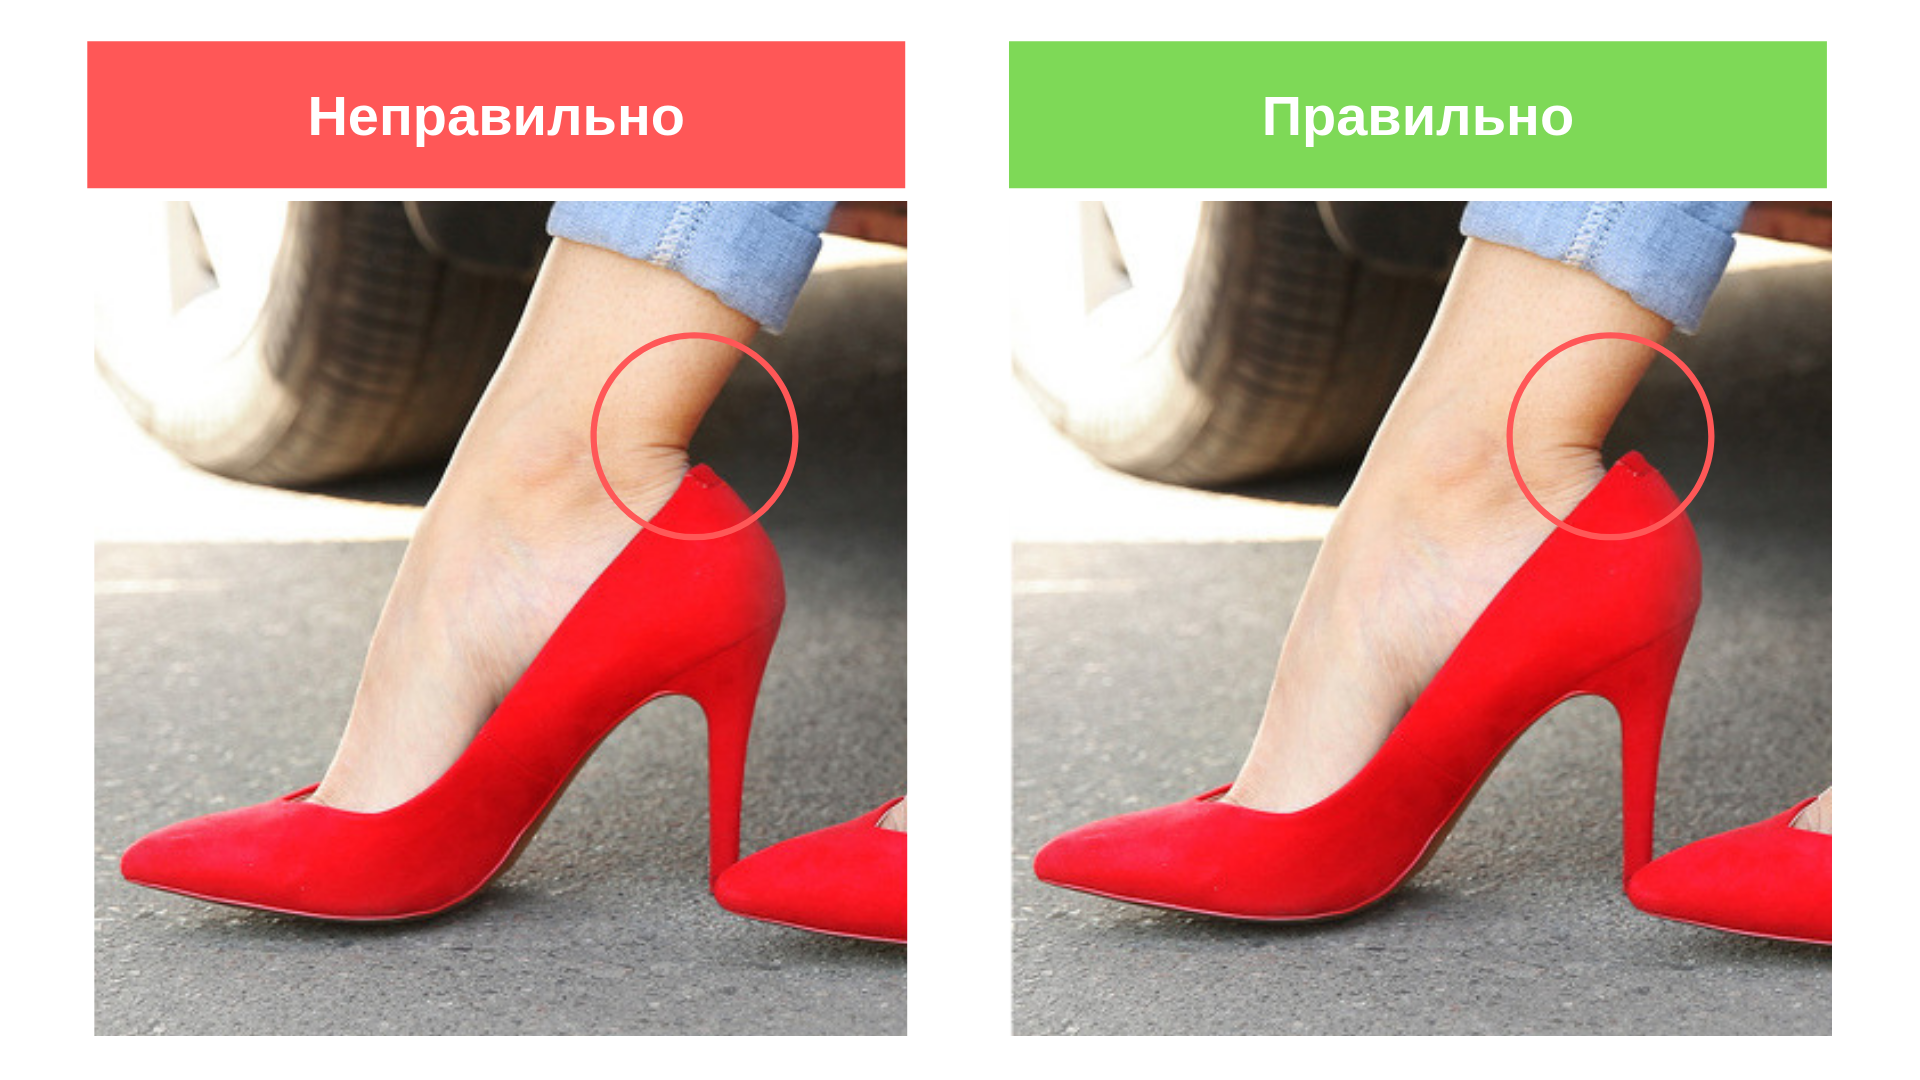 Правильная обувь с точки зрения физики